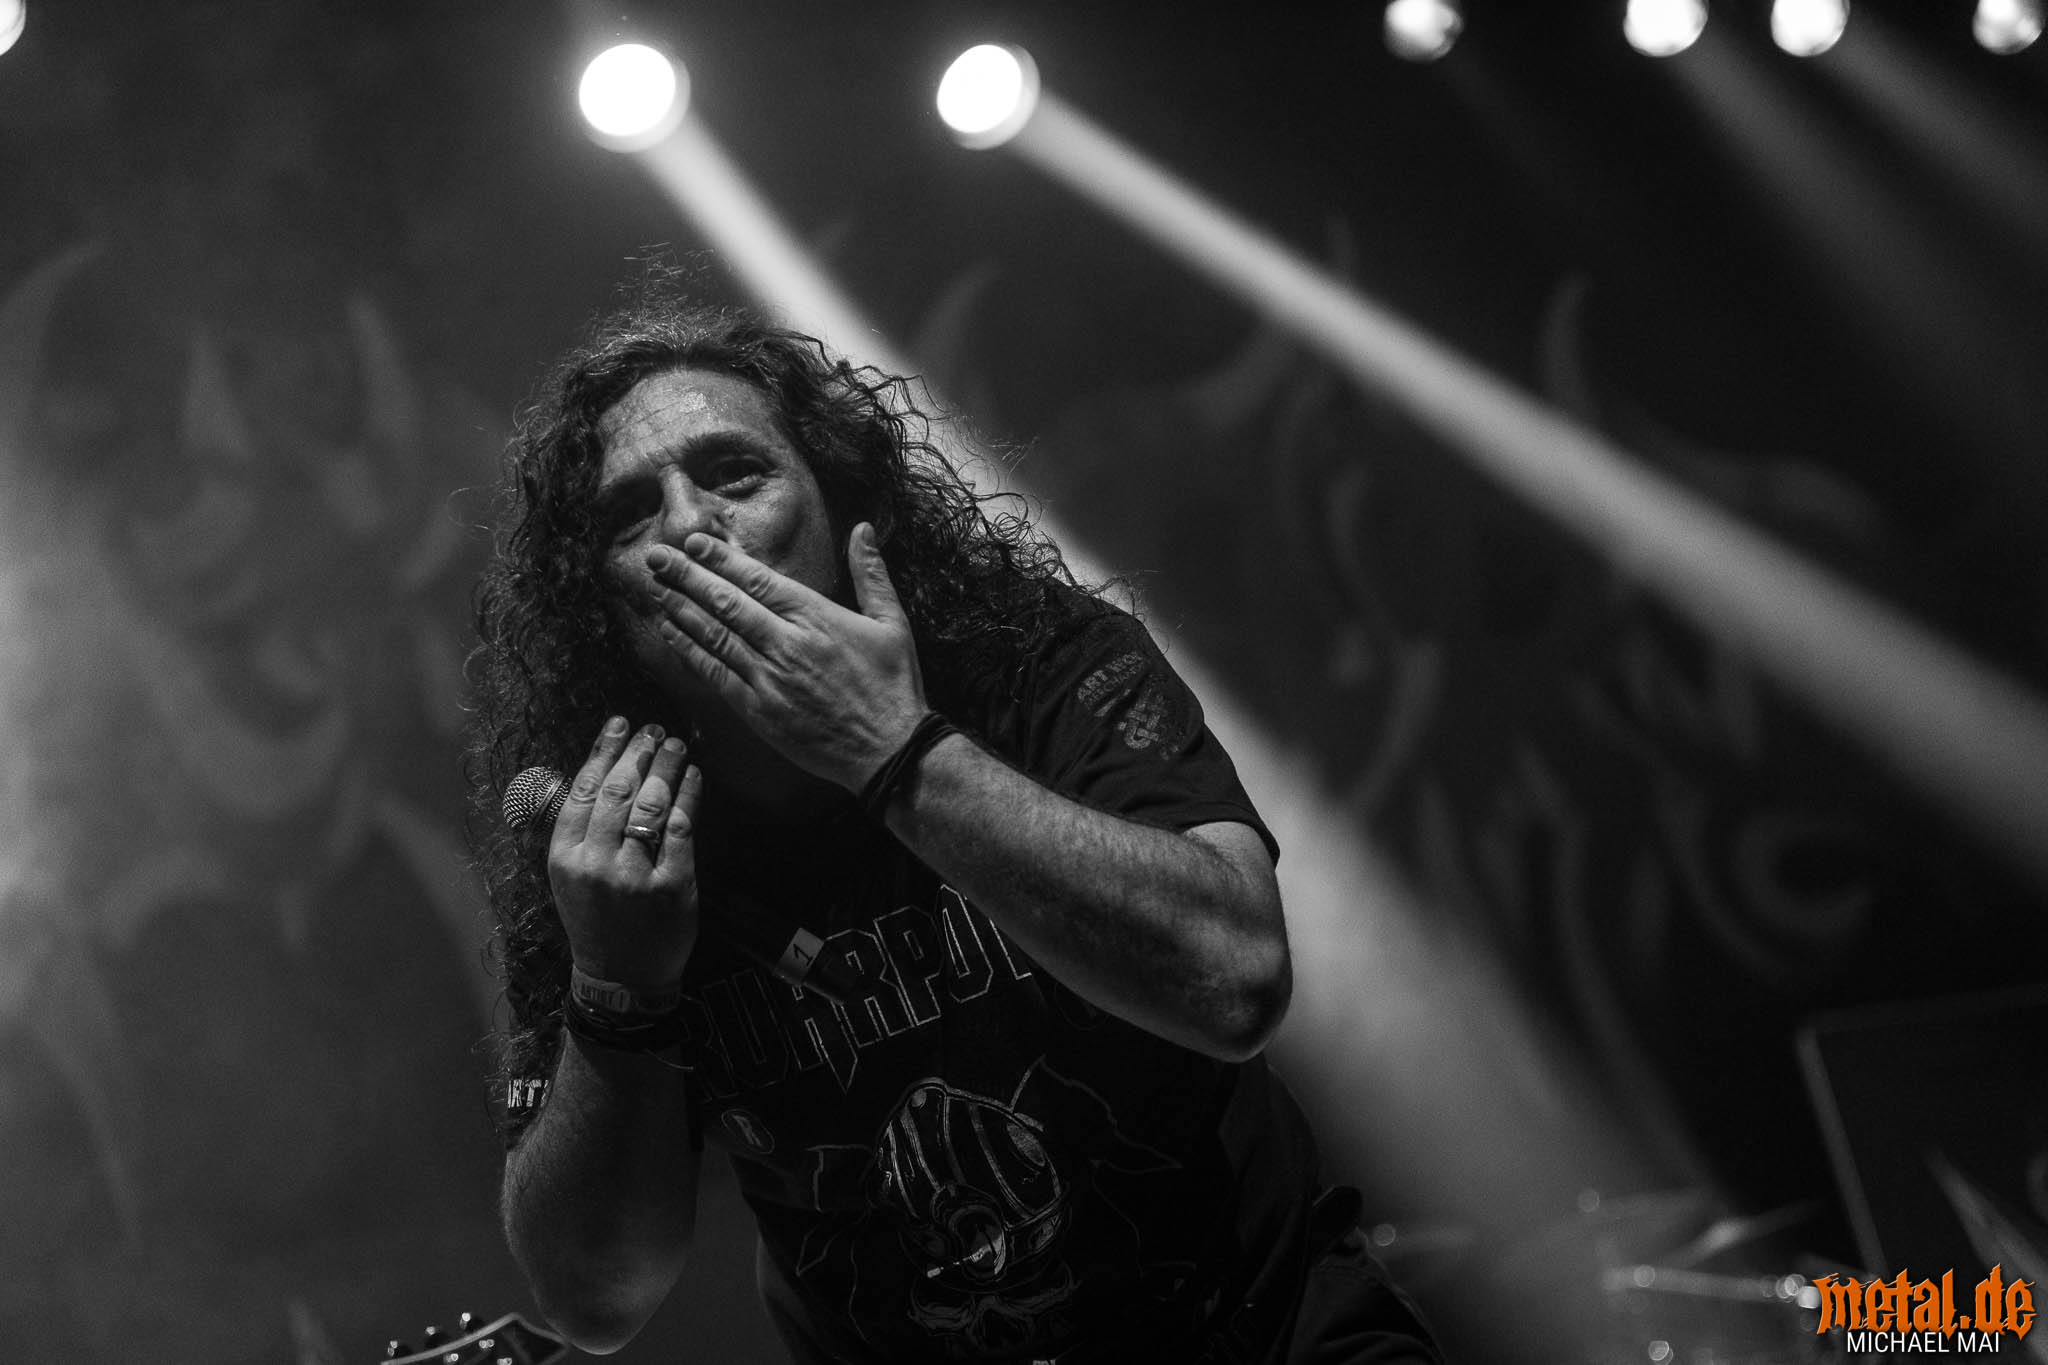 Konzertfoto von Tankard auf dem Ruhrpott Metal Meeting 2018